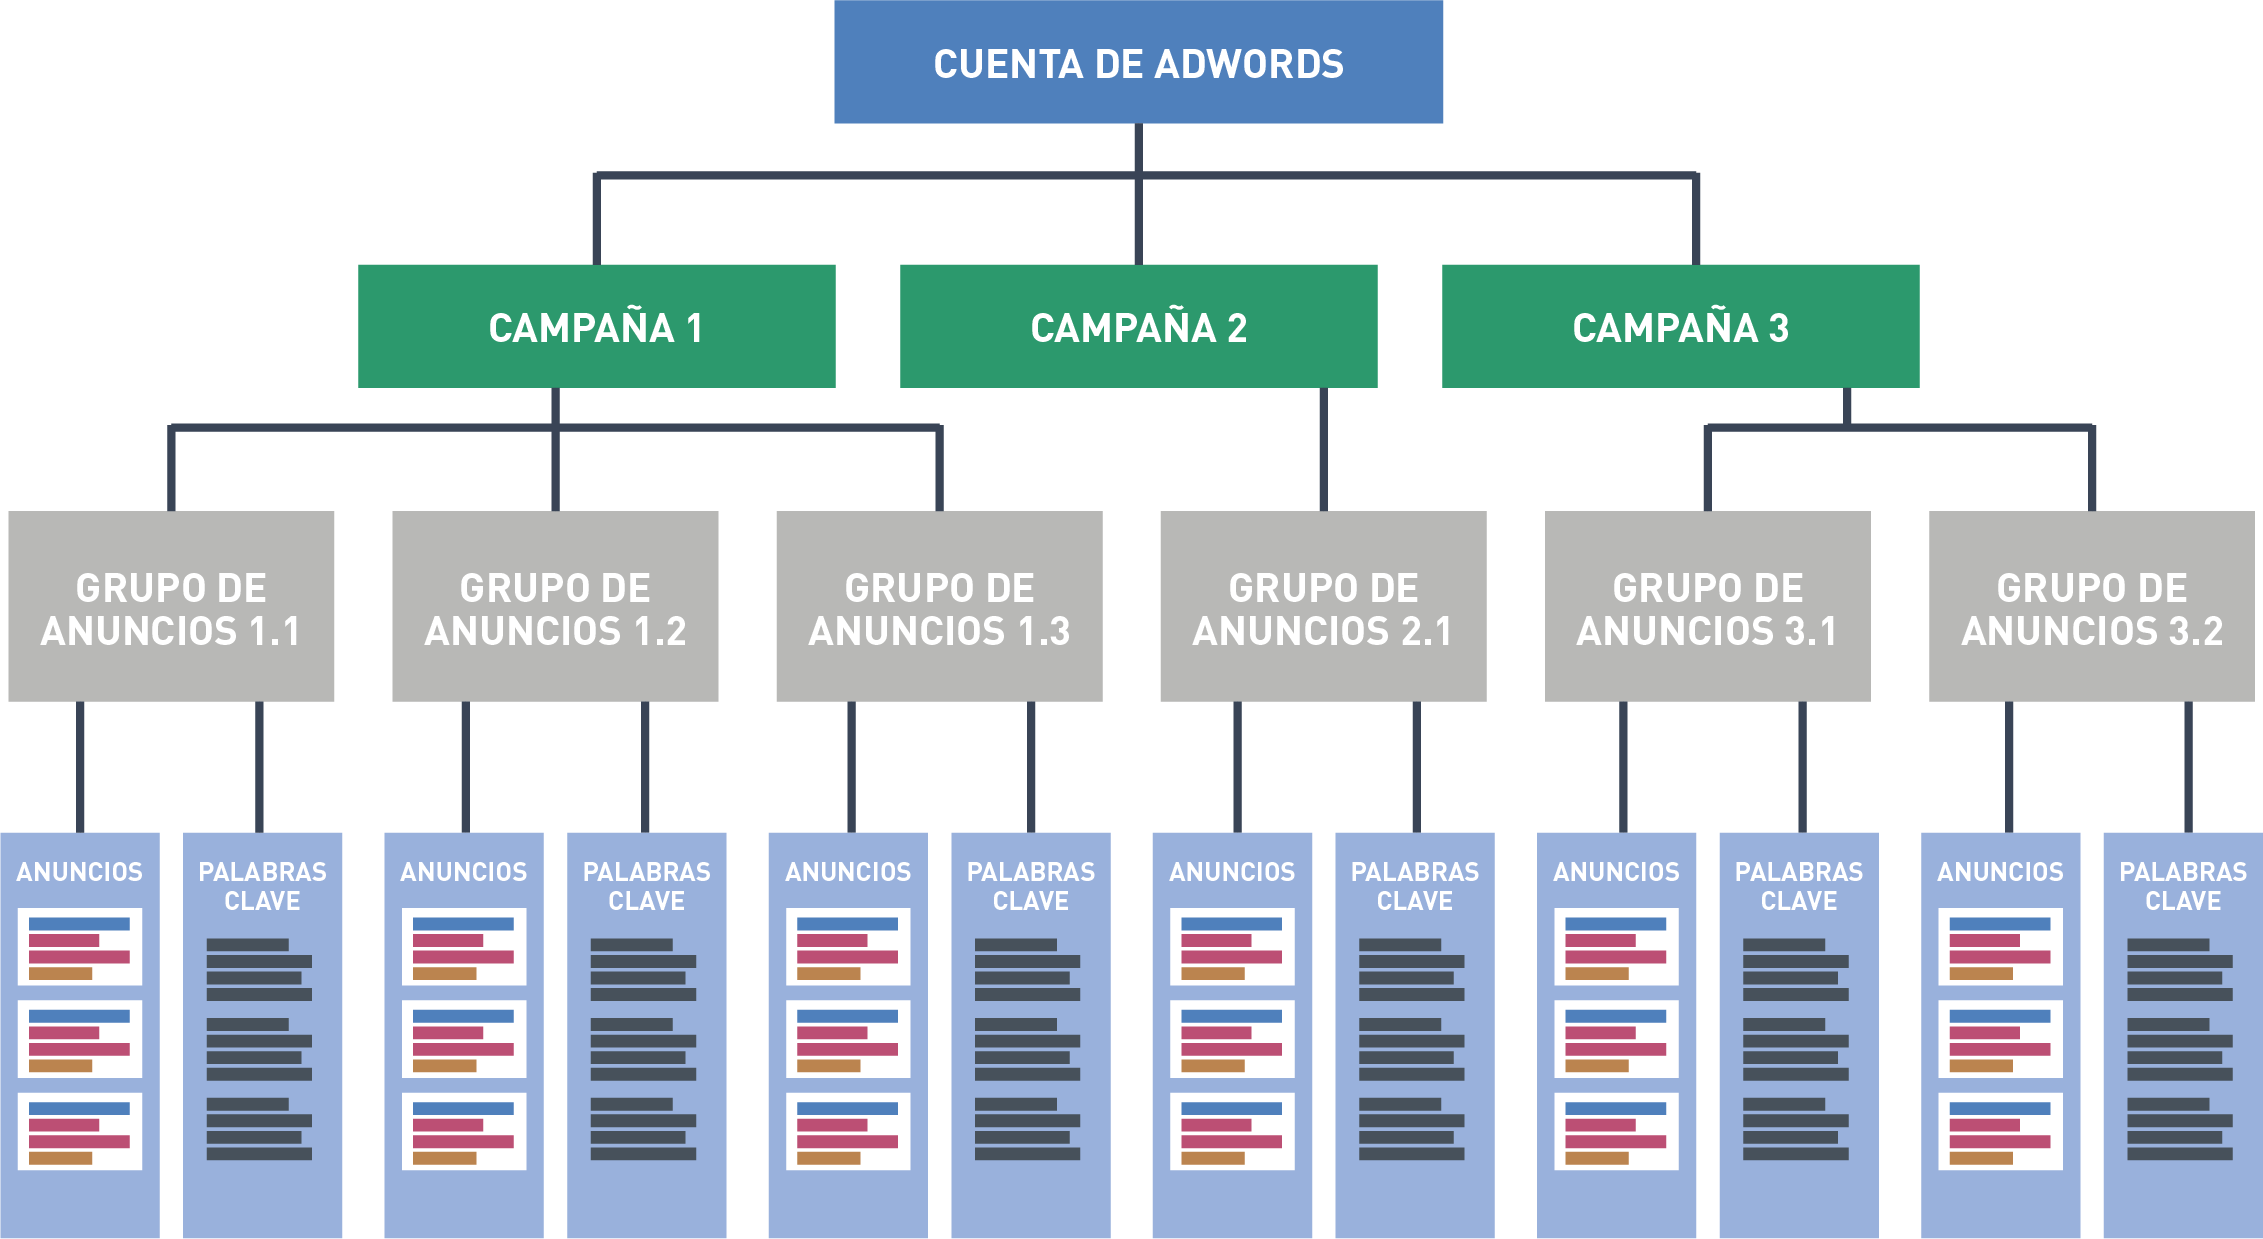 estructura-campaña-adwords-barcelona